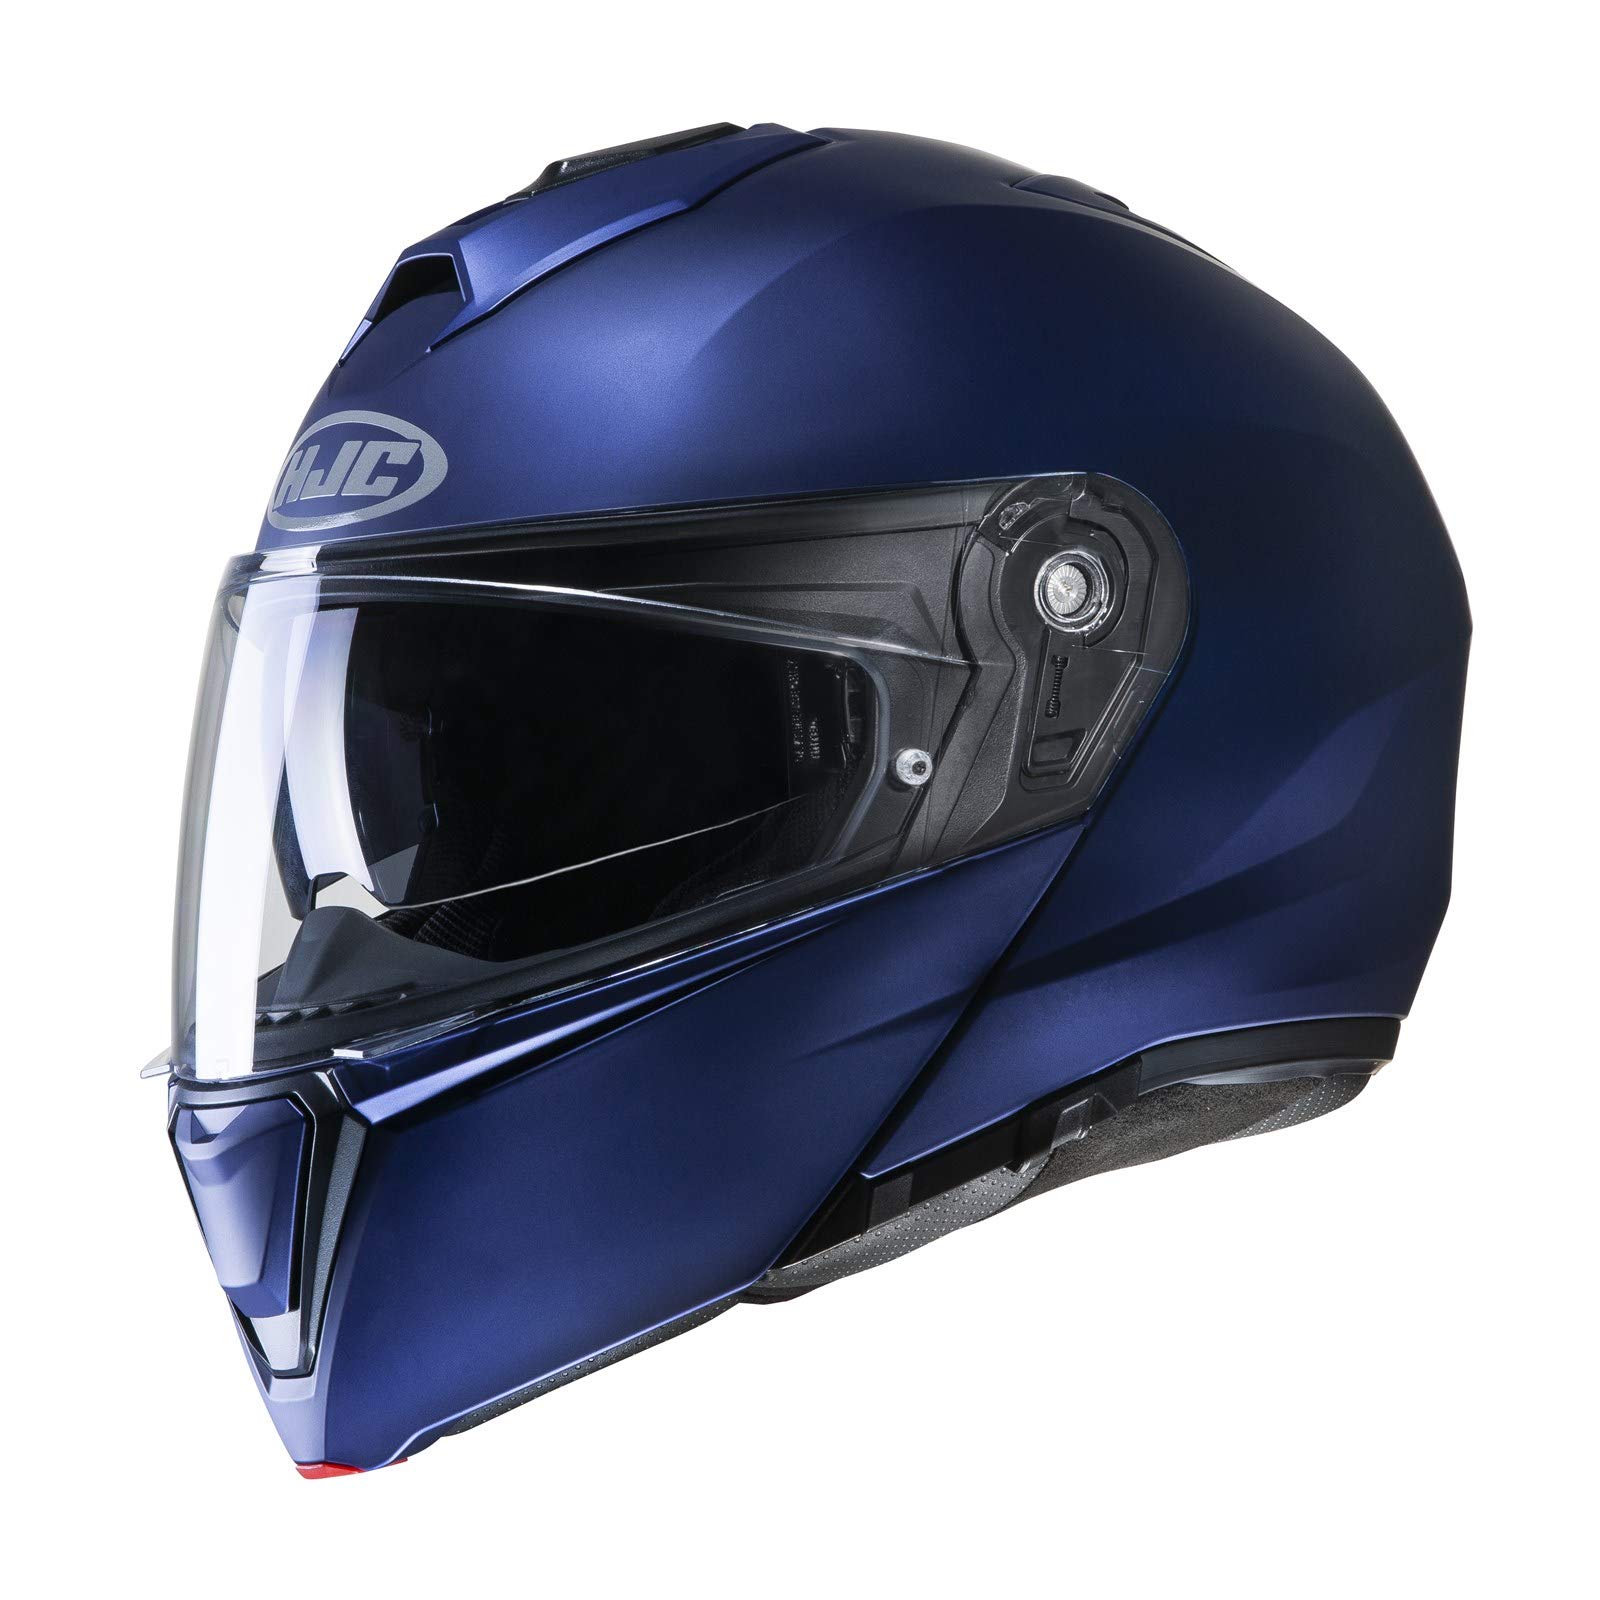 HJC Helmets HJC i90 SEMI MAT Blau METAL/SEMI FLAT METALIC BLUE, Schwarz/Blau, XL Nc von HJC Helmets